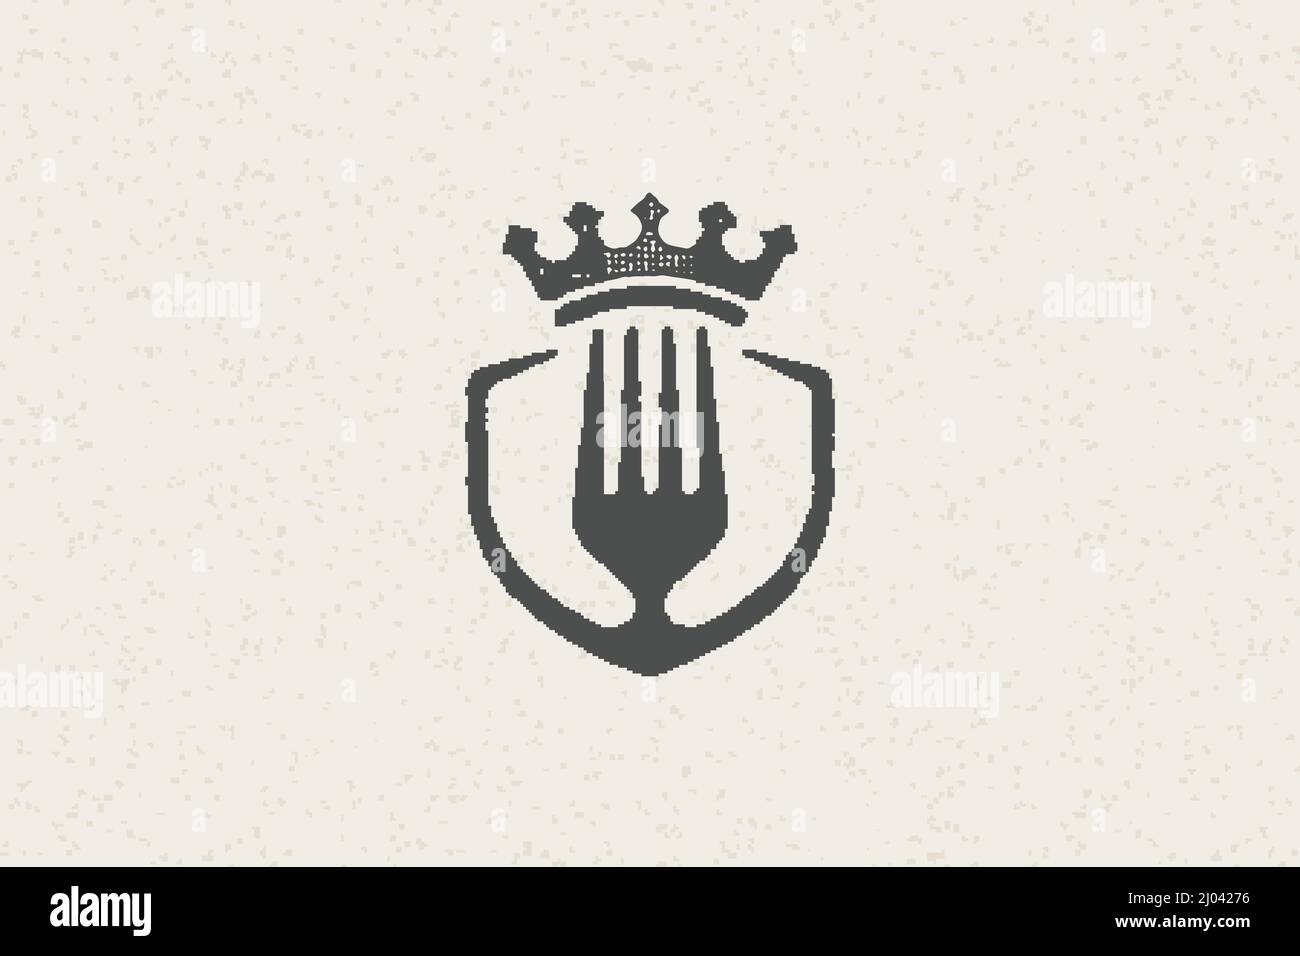 Gabel Silhouette und Krone für Premium-Food-Konzept handgezeichnete Stempel-Effekt Vektor-Illustration. Vintage Grunge Textur Emblem für Paket und Menü des Stock Vektor